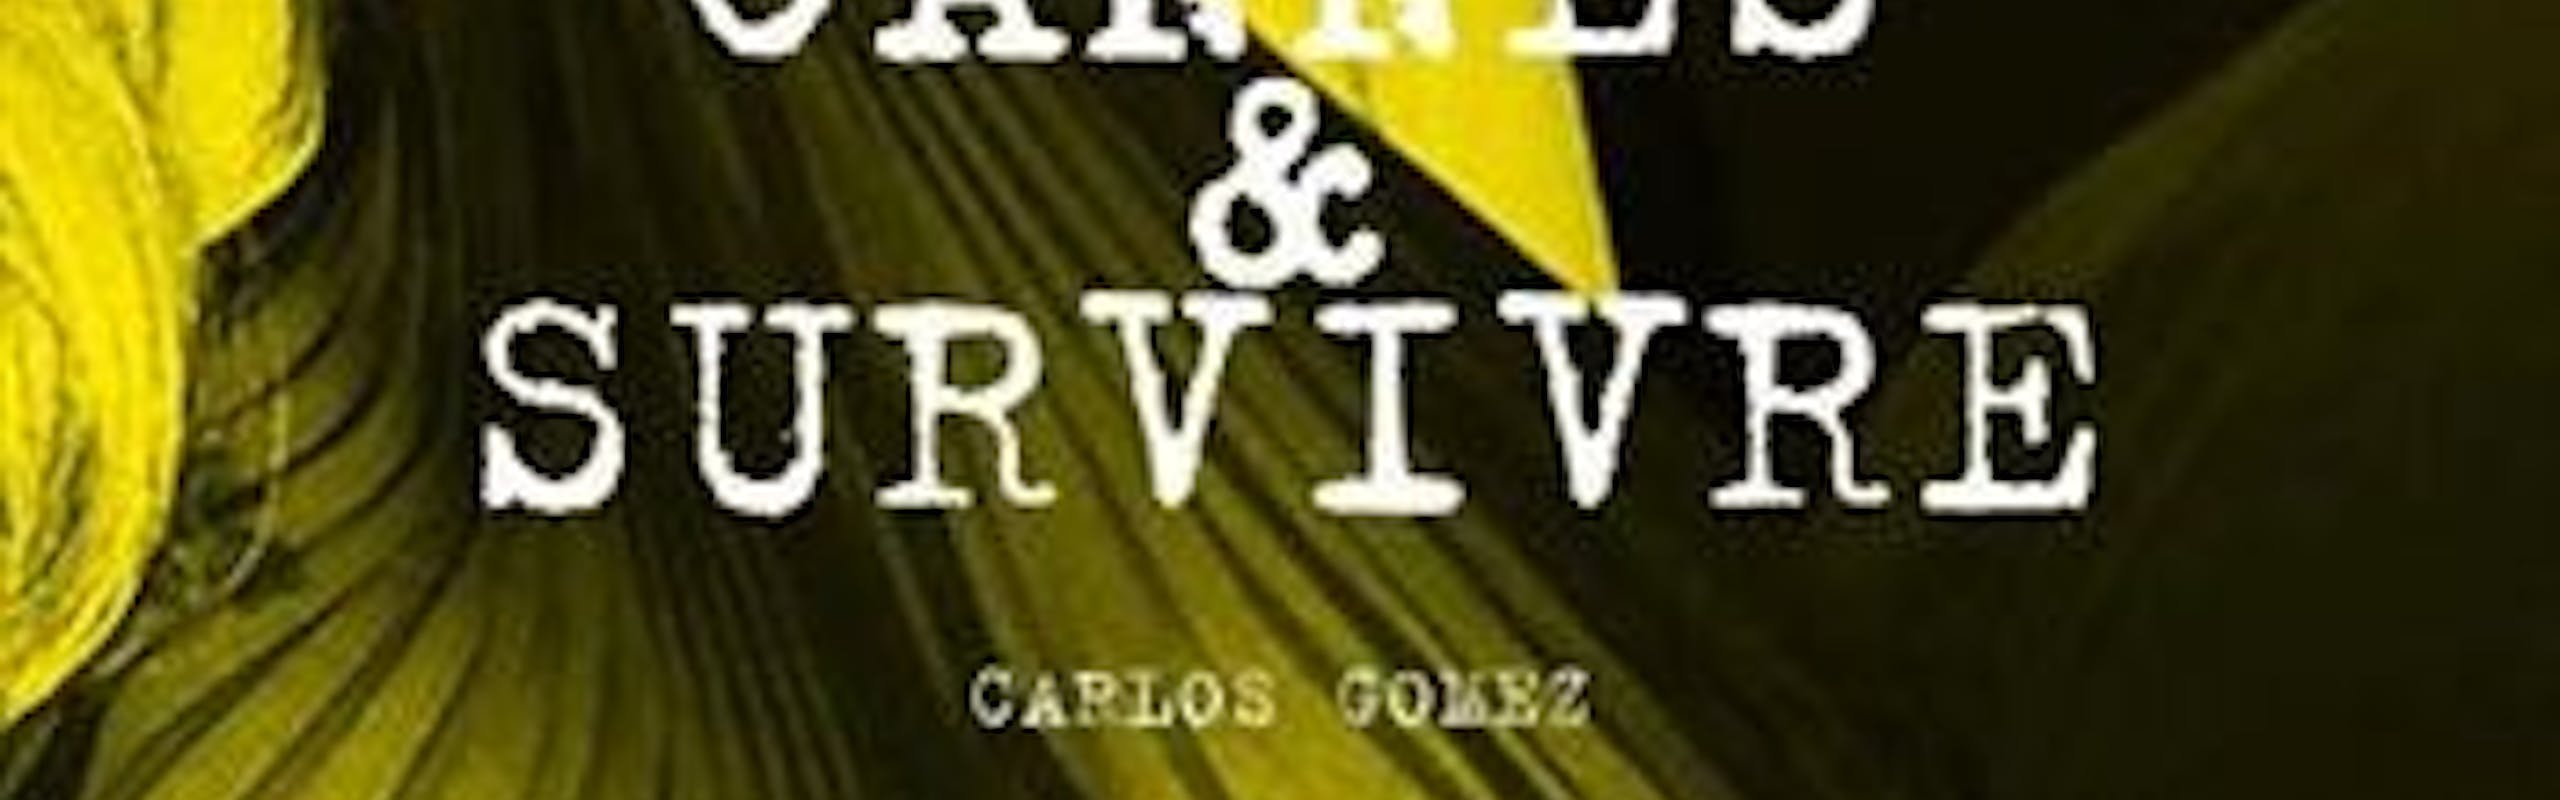 « Voir Cannes et survivre, les dessous du festival » de Carlos Gomez (Éditions L’artilleur, 2017)